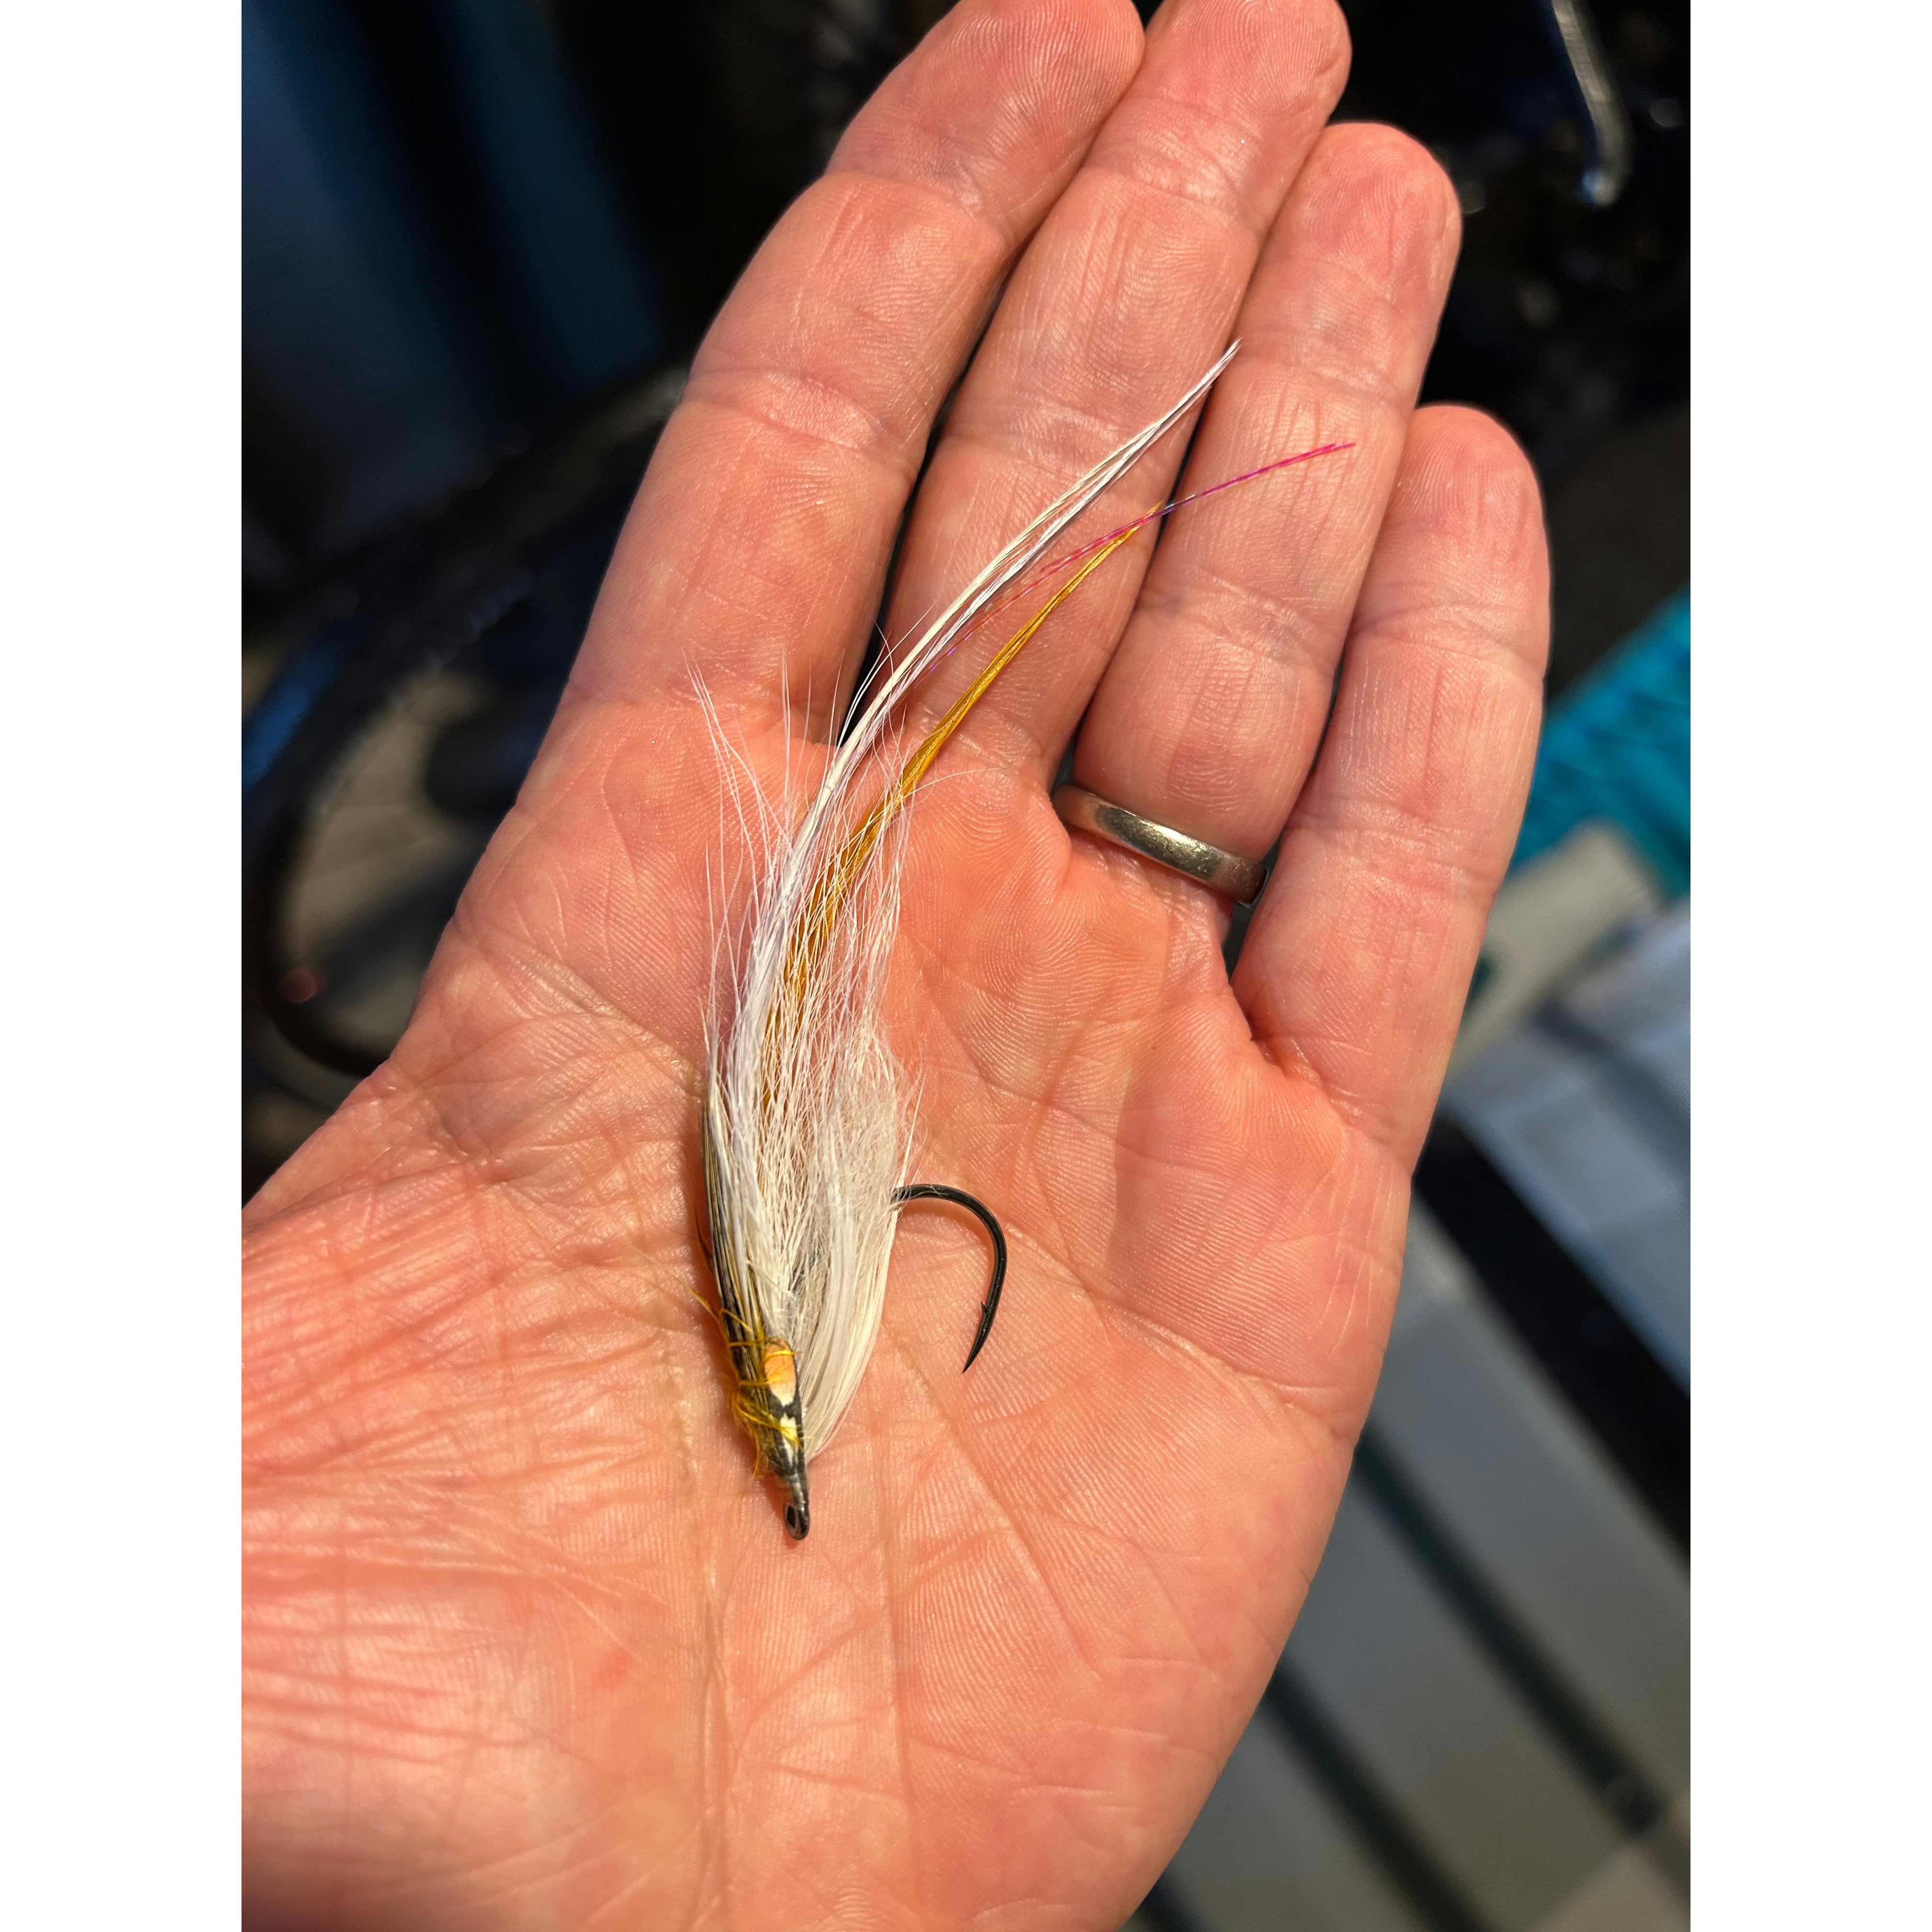 Saltwater Bass Flies